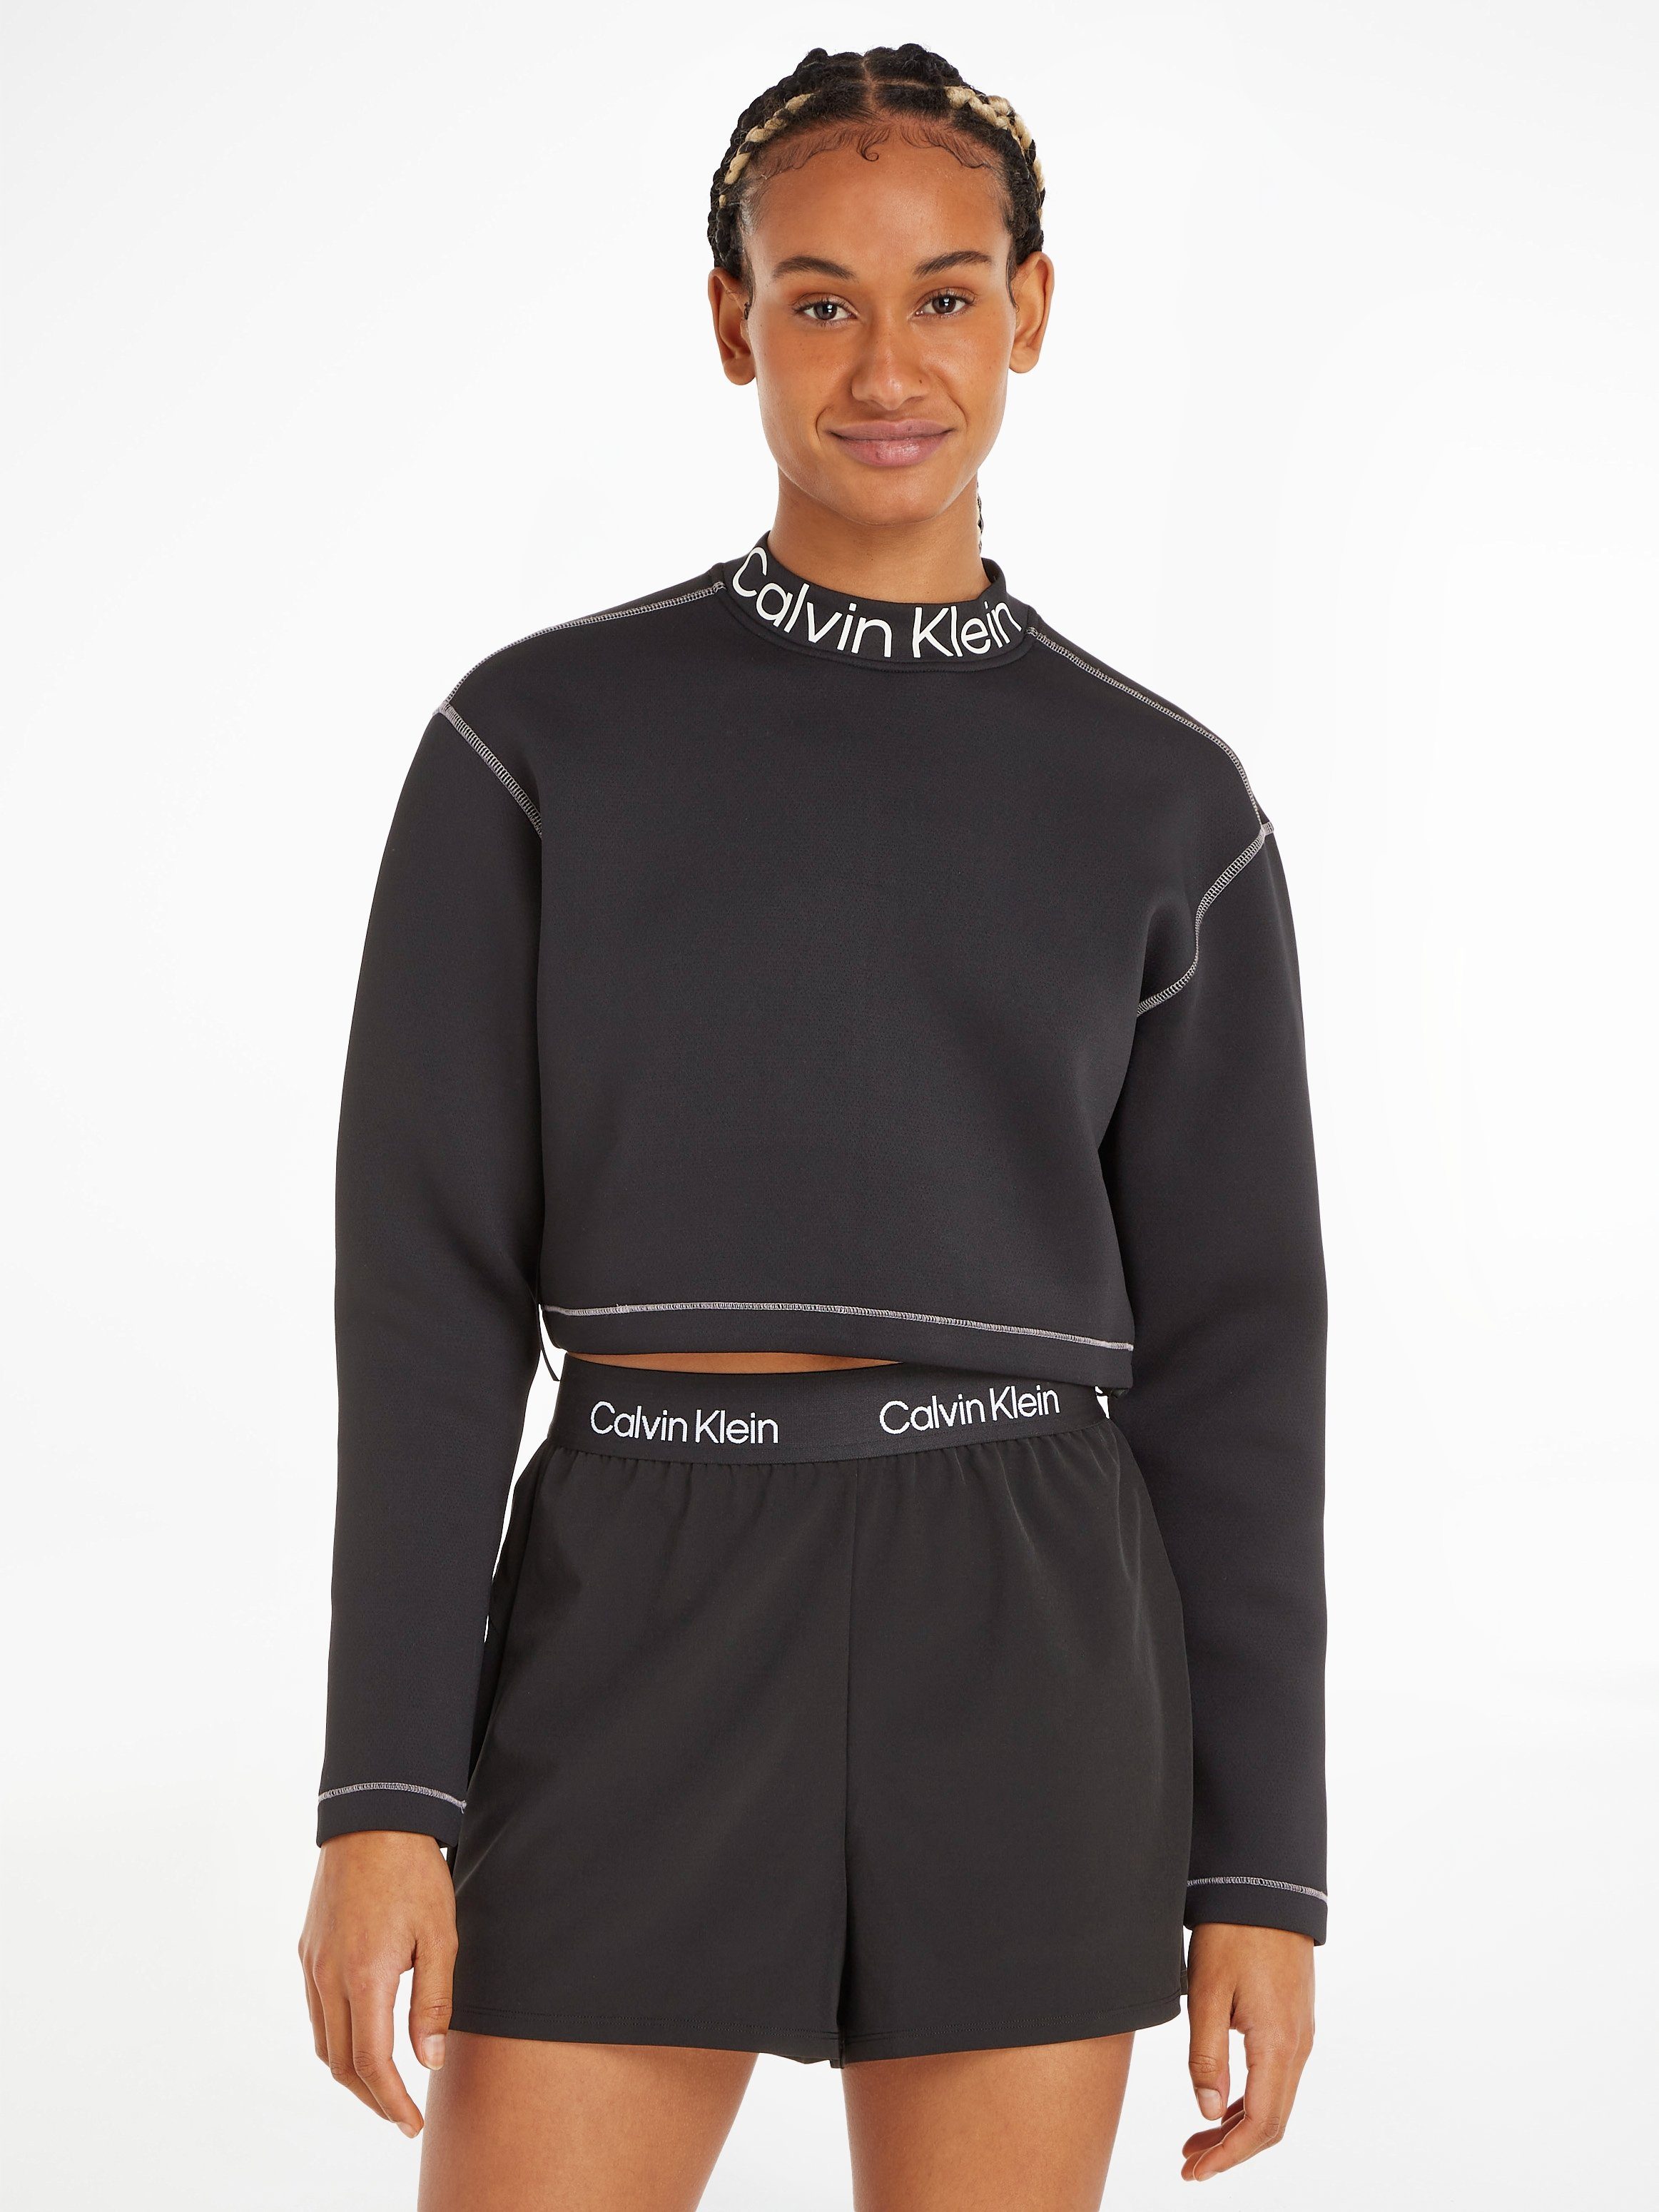 Top-Verkaufskampagne Calvin Klein Sport Pullover - Rundhalspullover PW schwarz